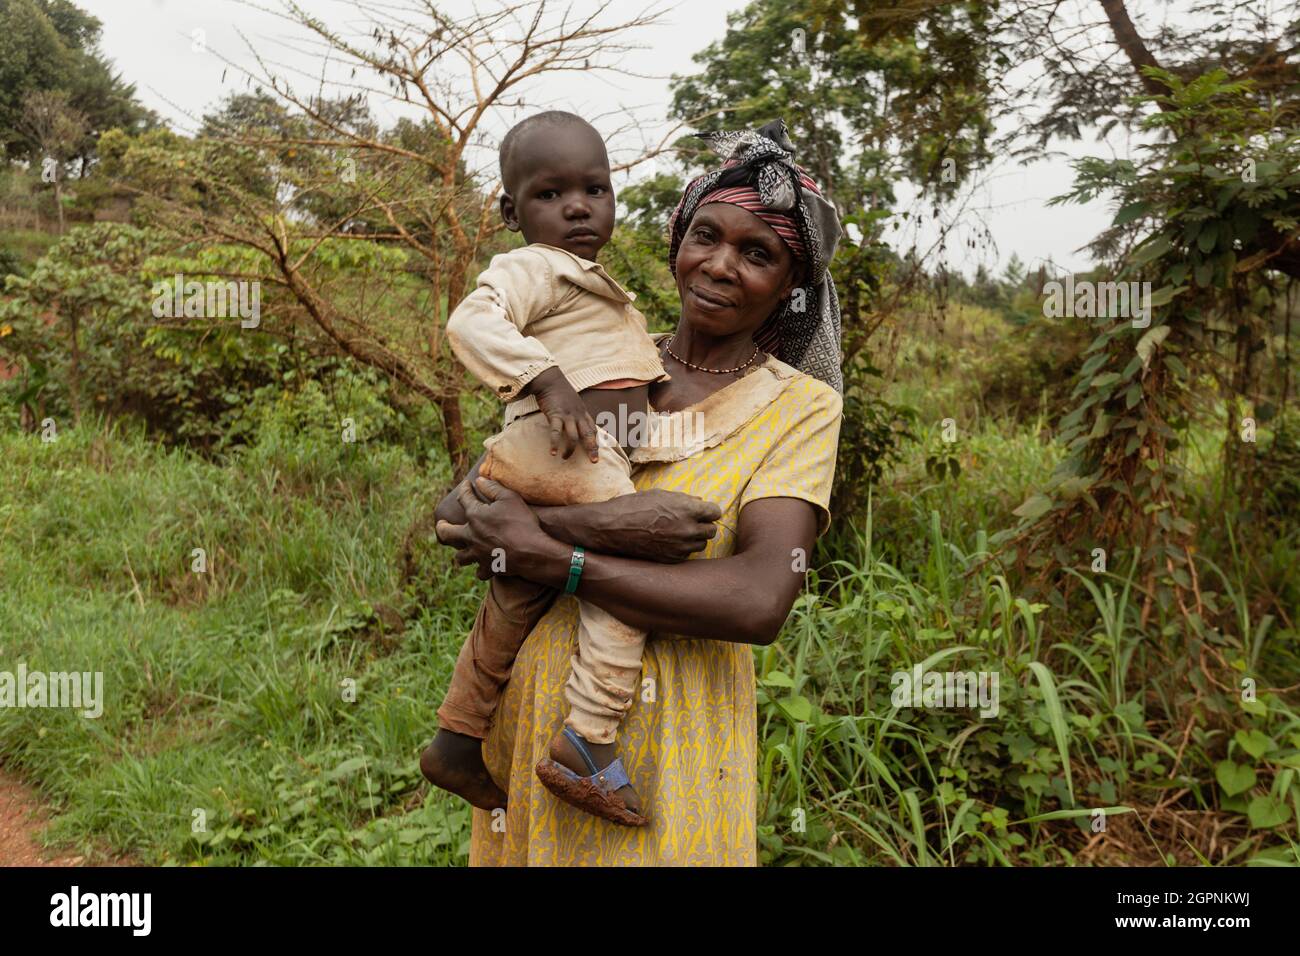 PARC NATIONAL DE KIBALE, OUGANDA - 15 MARS 2018 : une femme non identifiée tient son petit enfant dans ses bras Banque D'Images